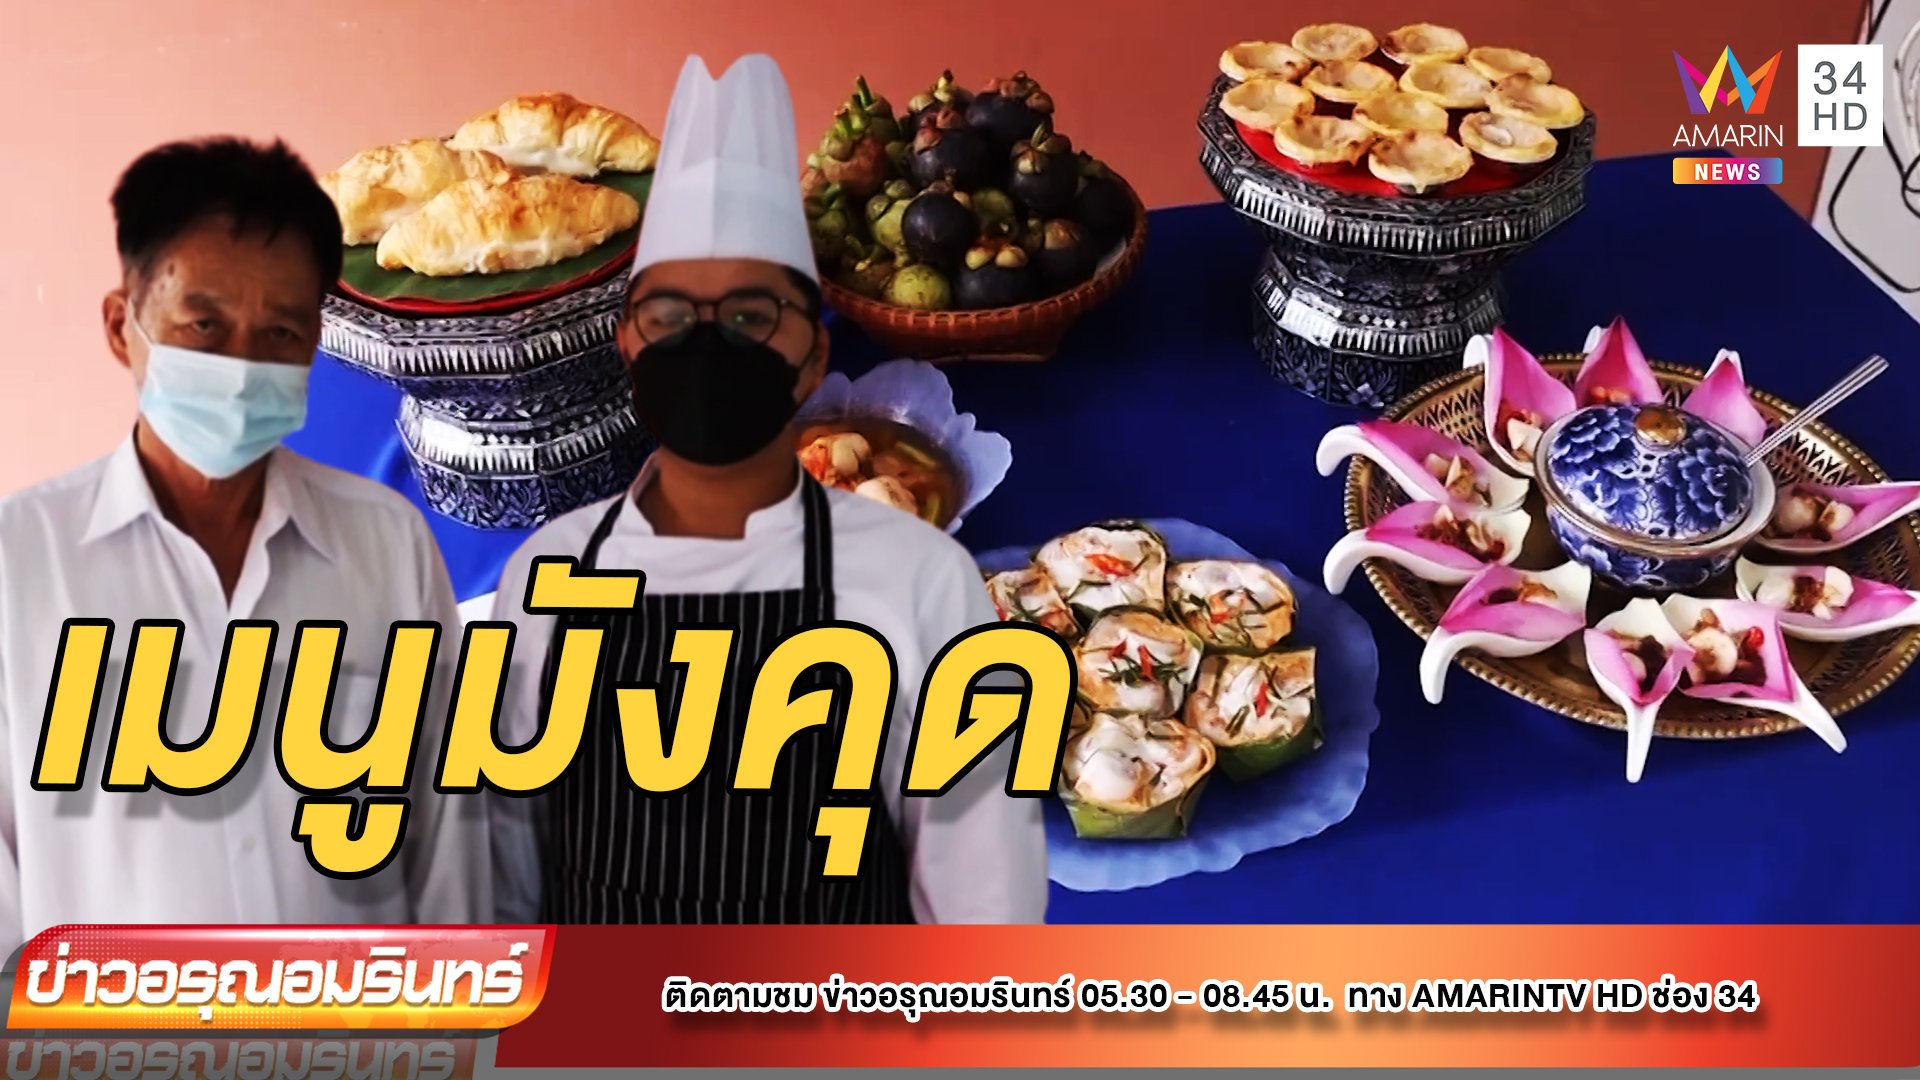 6 เมนูอาหารคาวหวาน เอาใจคนรักมังคุด | ข่าวอรุณอมรินทร์ | 26 พ.ค. 65 | AMARIN TVHD34